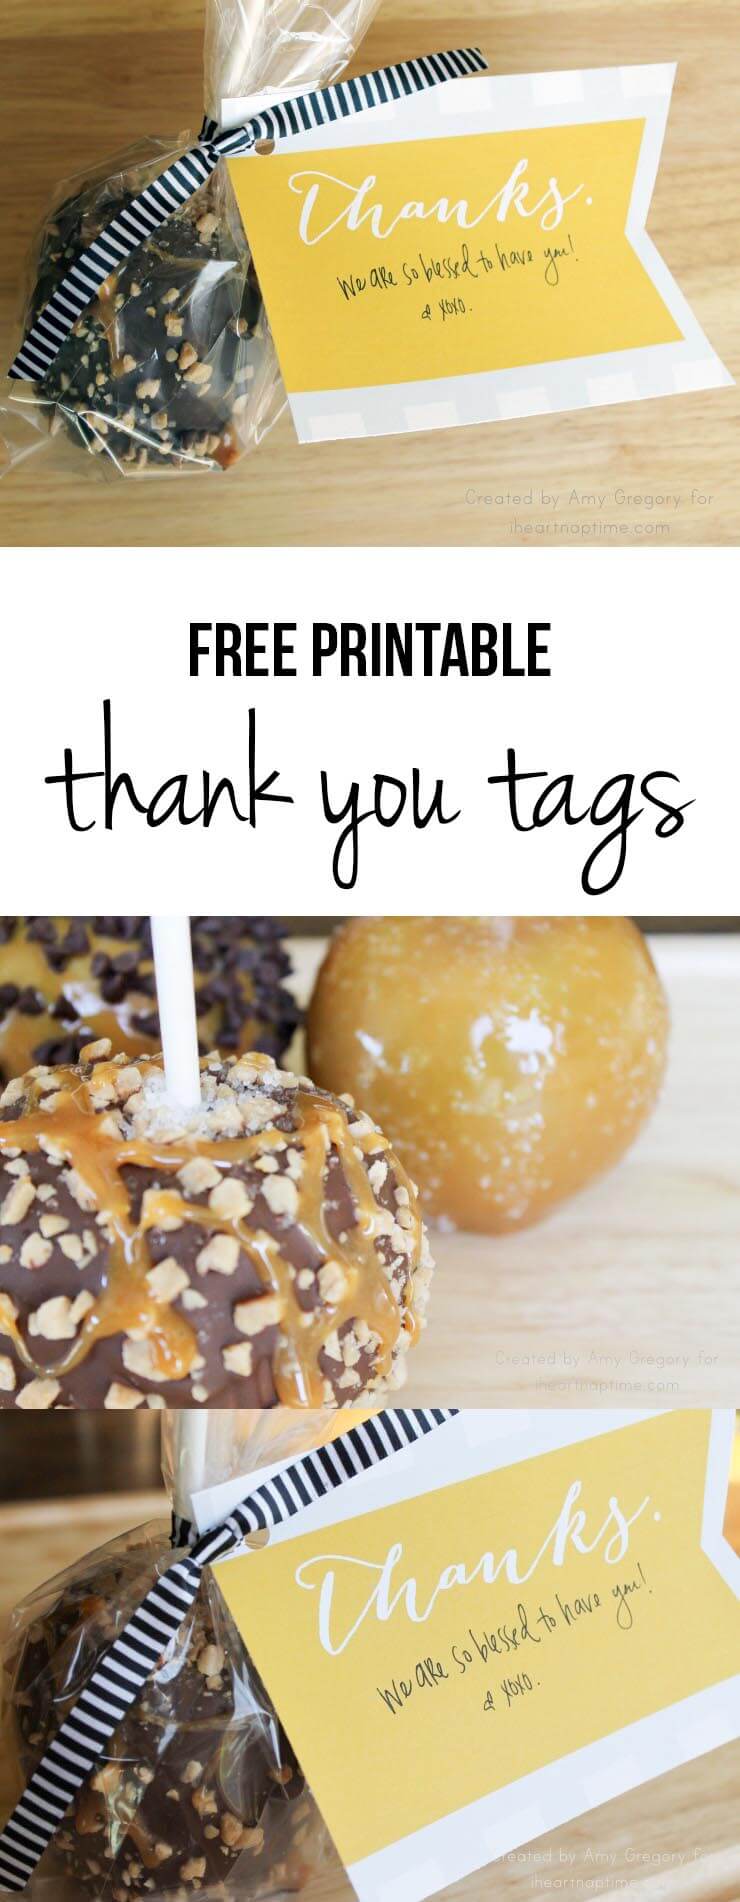 Free printable thank you tags